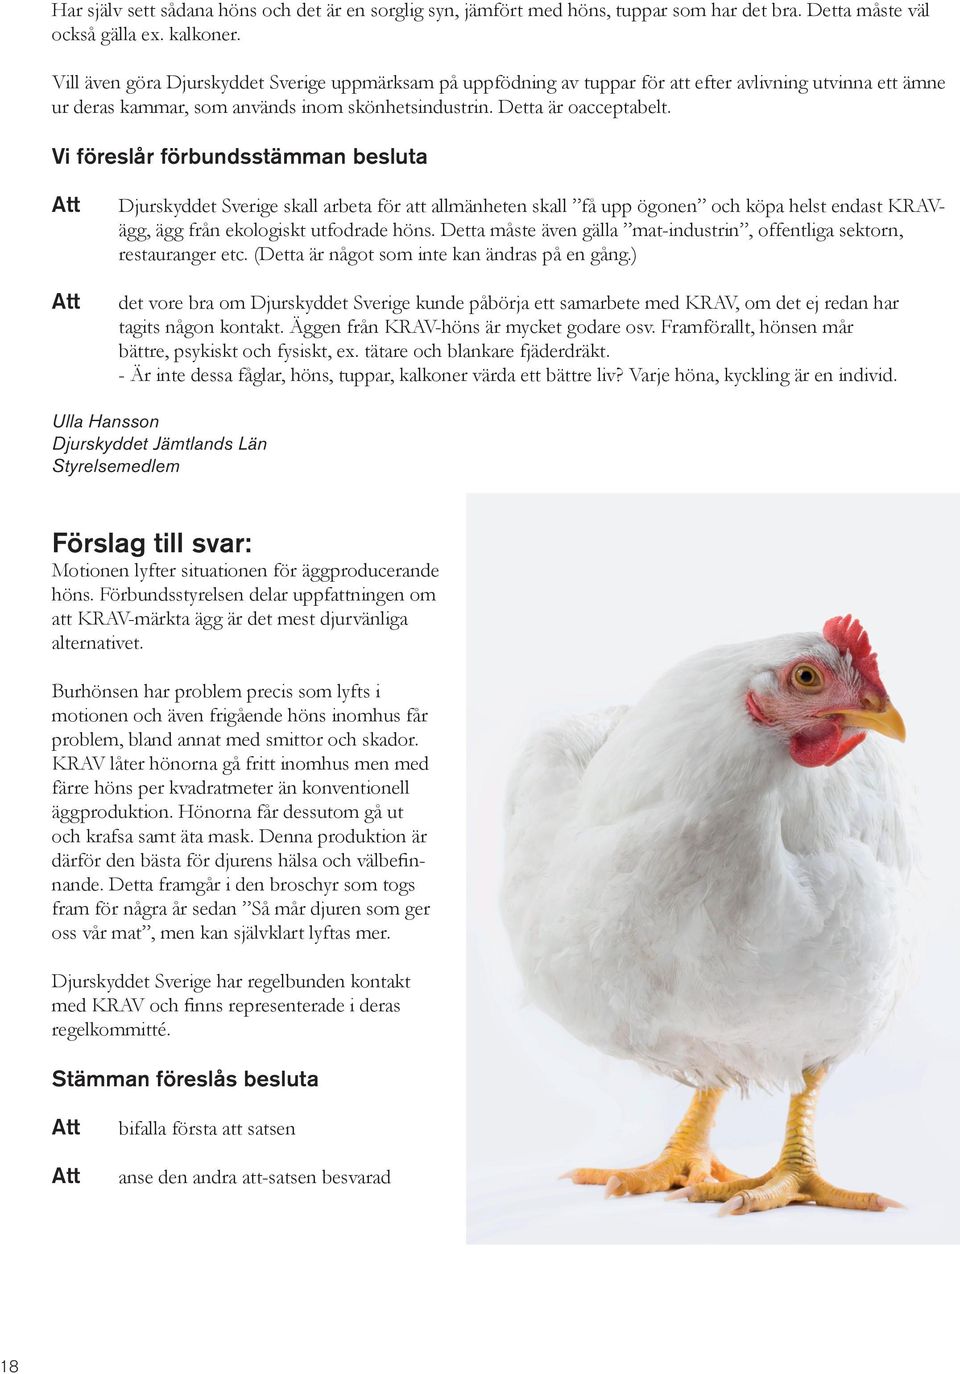 Vi föreslår förbundsstämman besluta Djurskyddet Sverige skall arbeta för att allmänheten skall få upp ögonen och köpa helst endast KRAVägg, ägg från ekologiskt utfodrade höns.